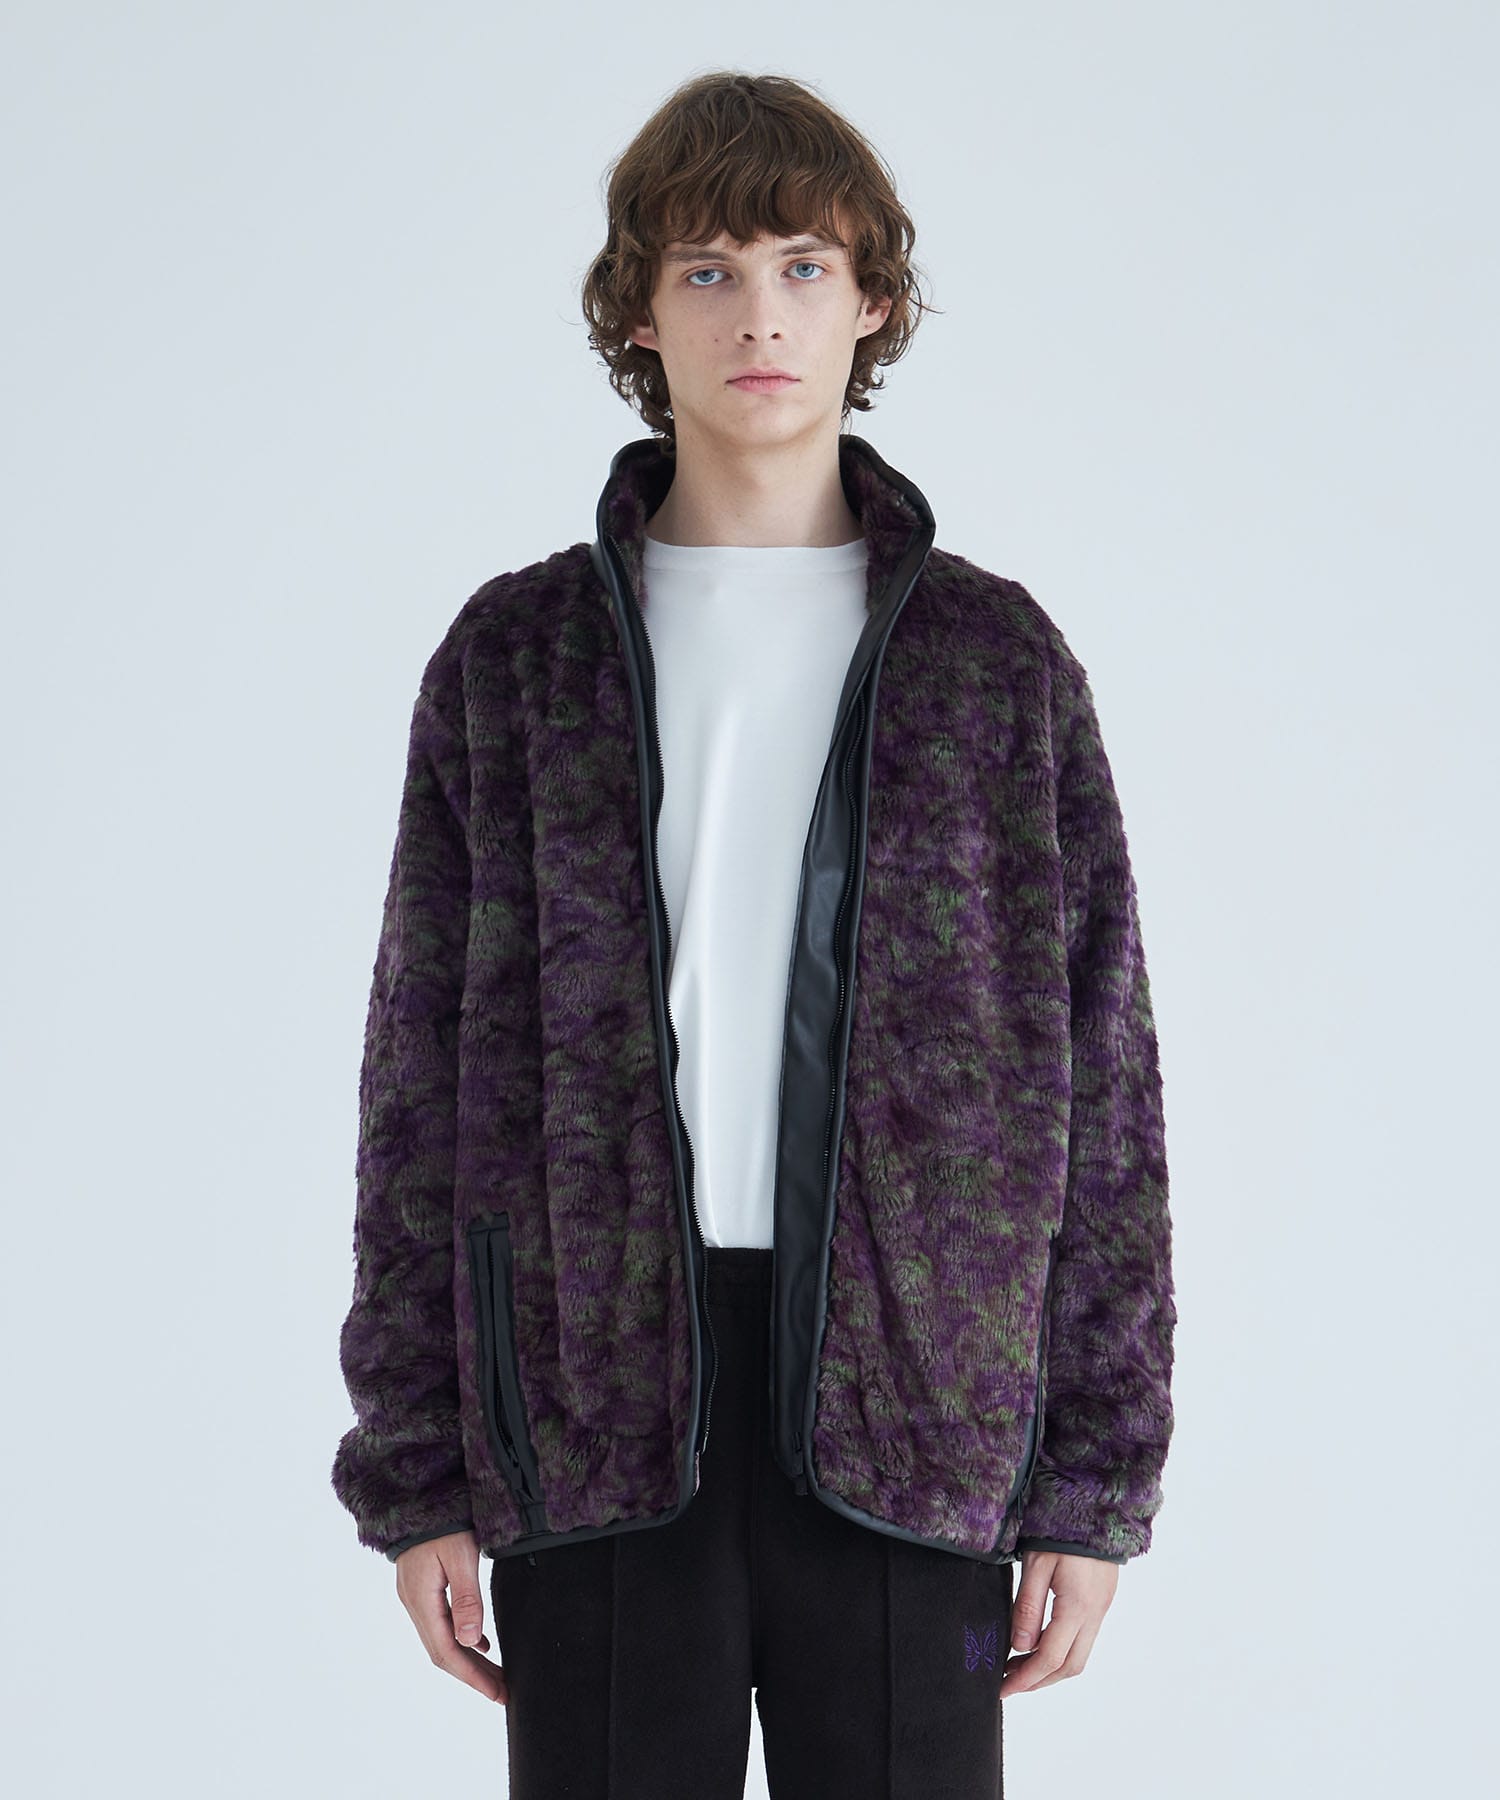 Fur Jacket - Faux Fur / Uneven Printed